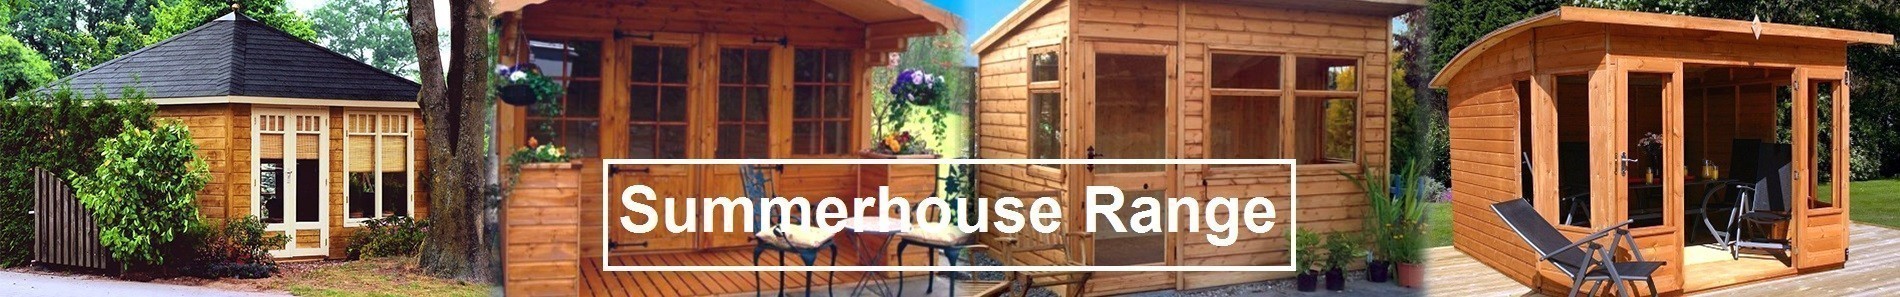 Summerhouse; log cabin summerhouse